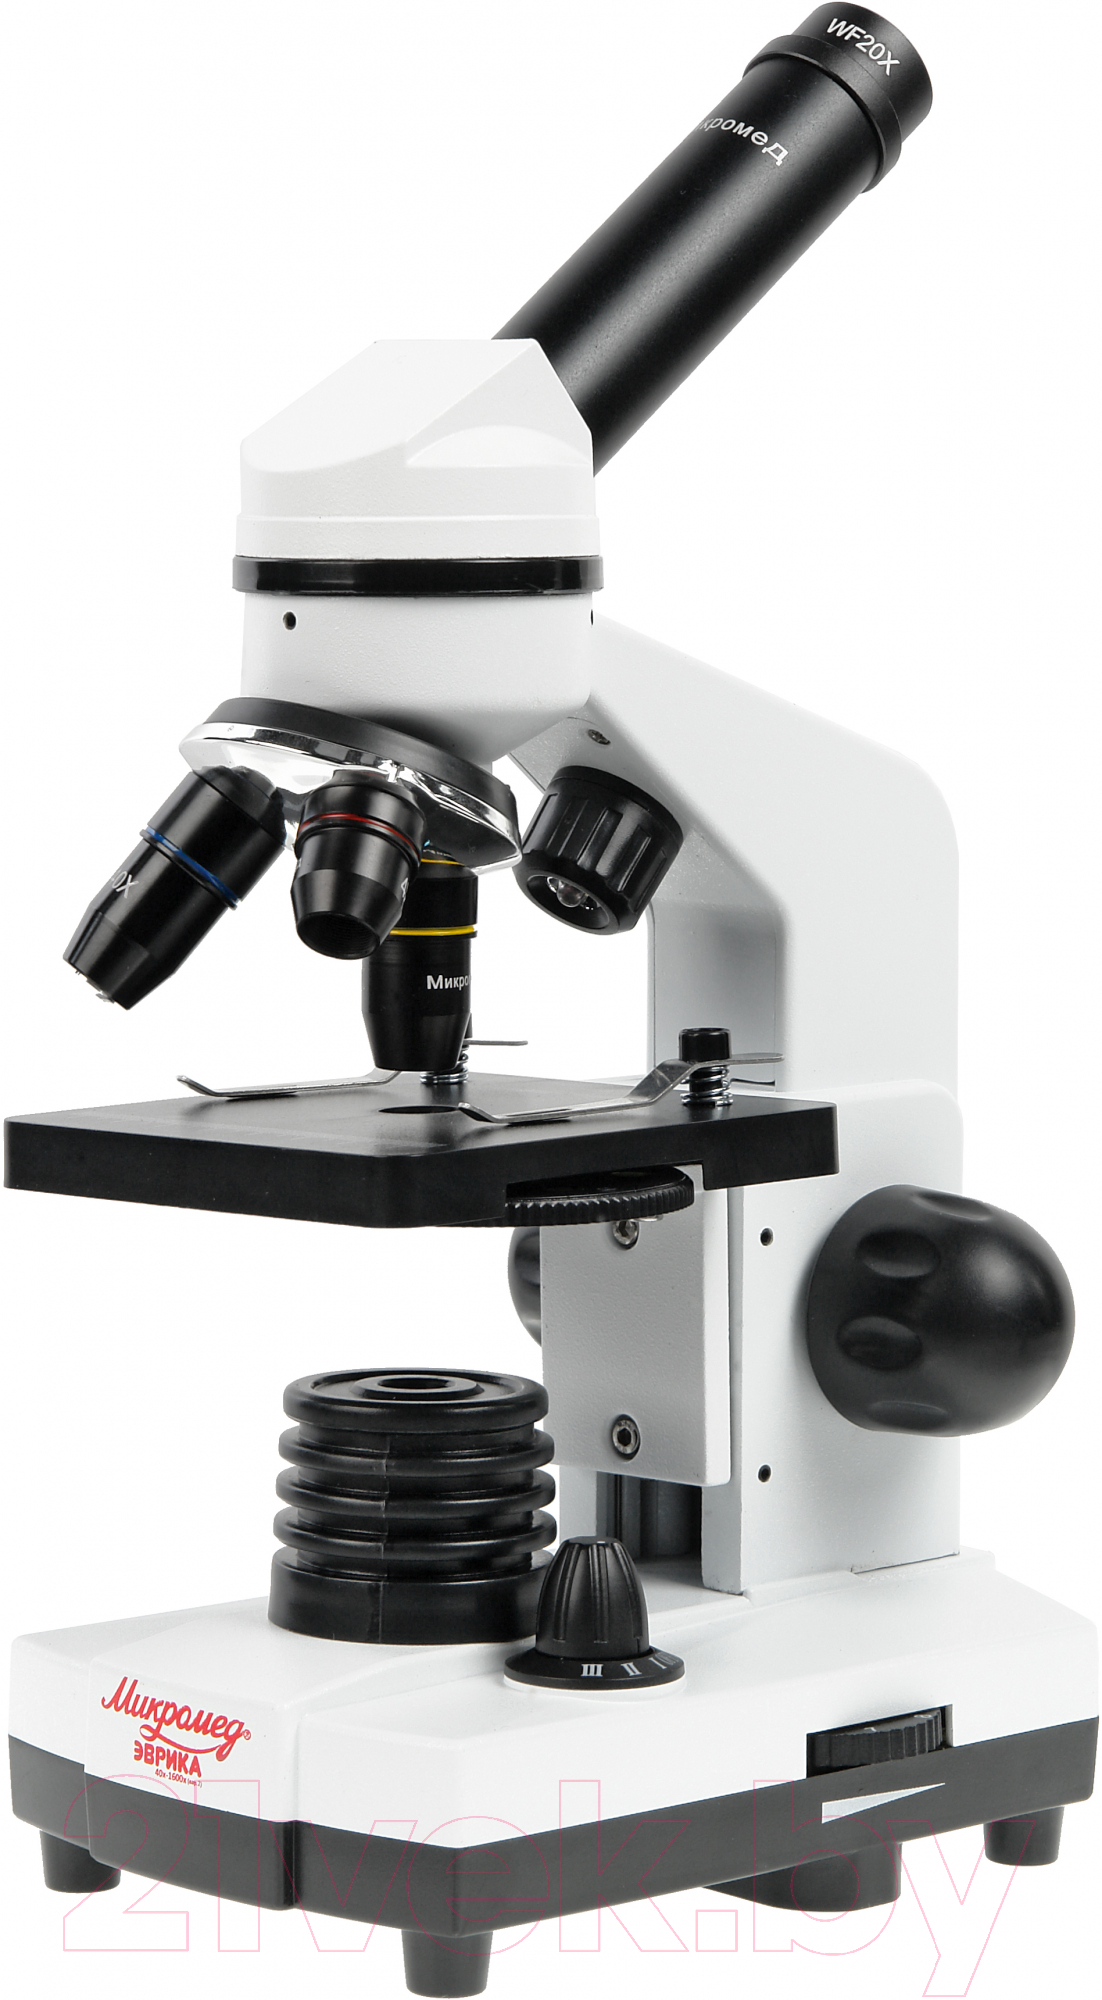 Микроскоп оптический Микромед Эврика 40х-1600х с видеоокуляром / 30417n